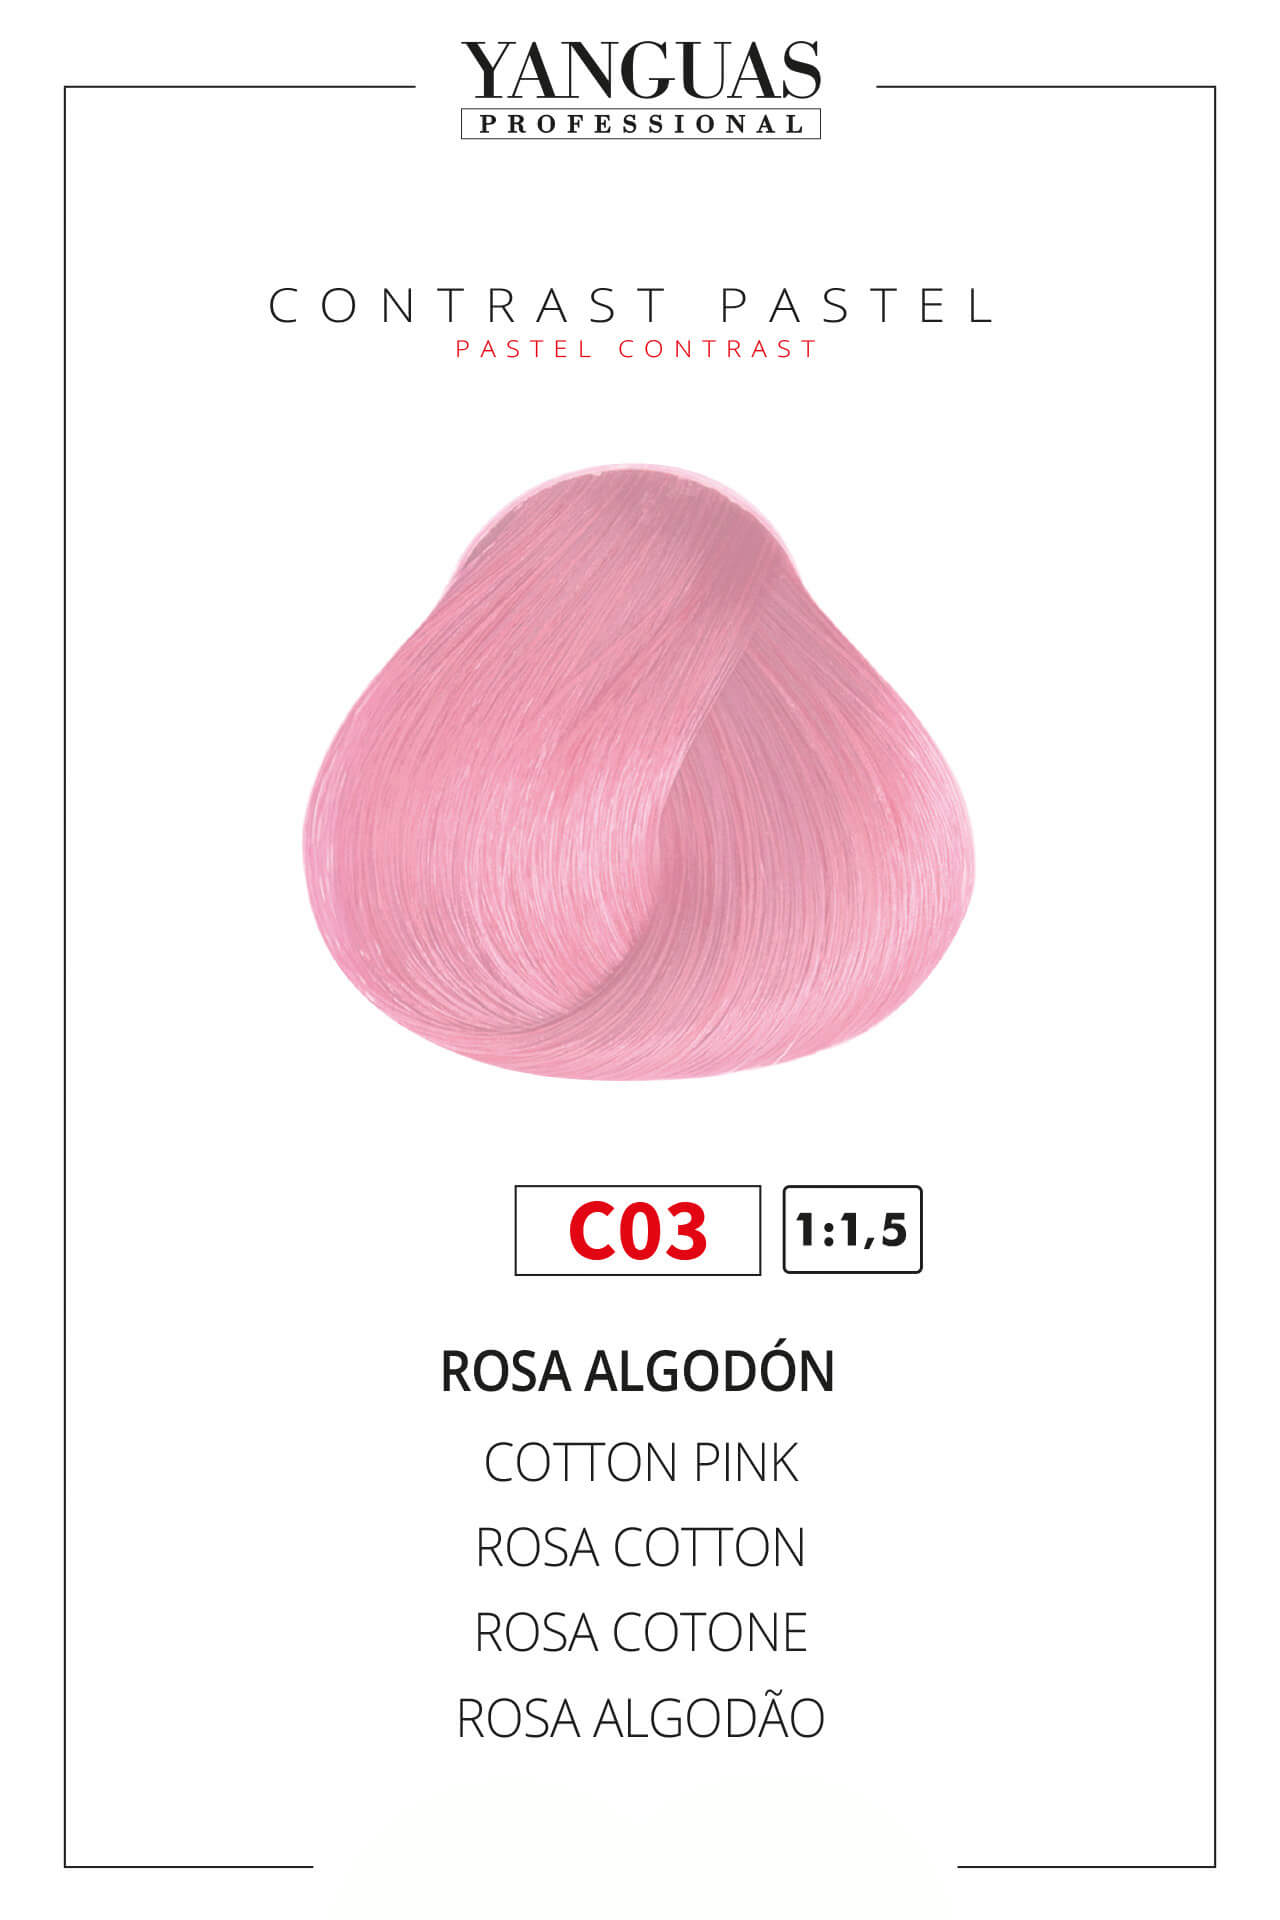 Tinte Rosa Algodón C03 Attraxtion » Damas y Barbudos